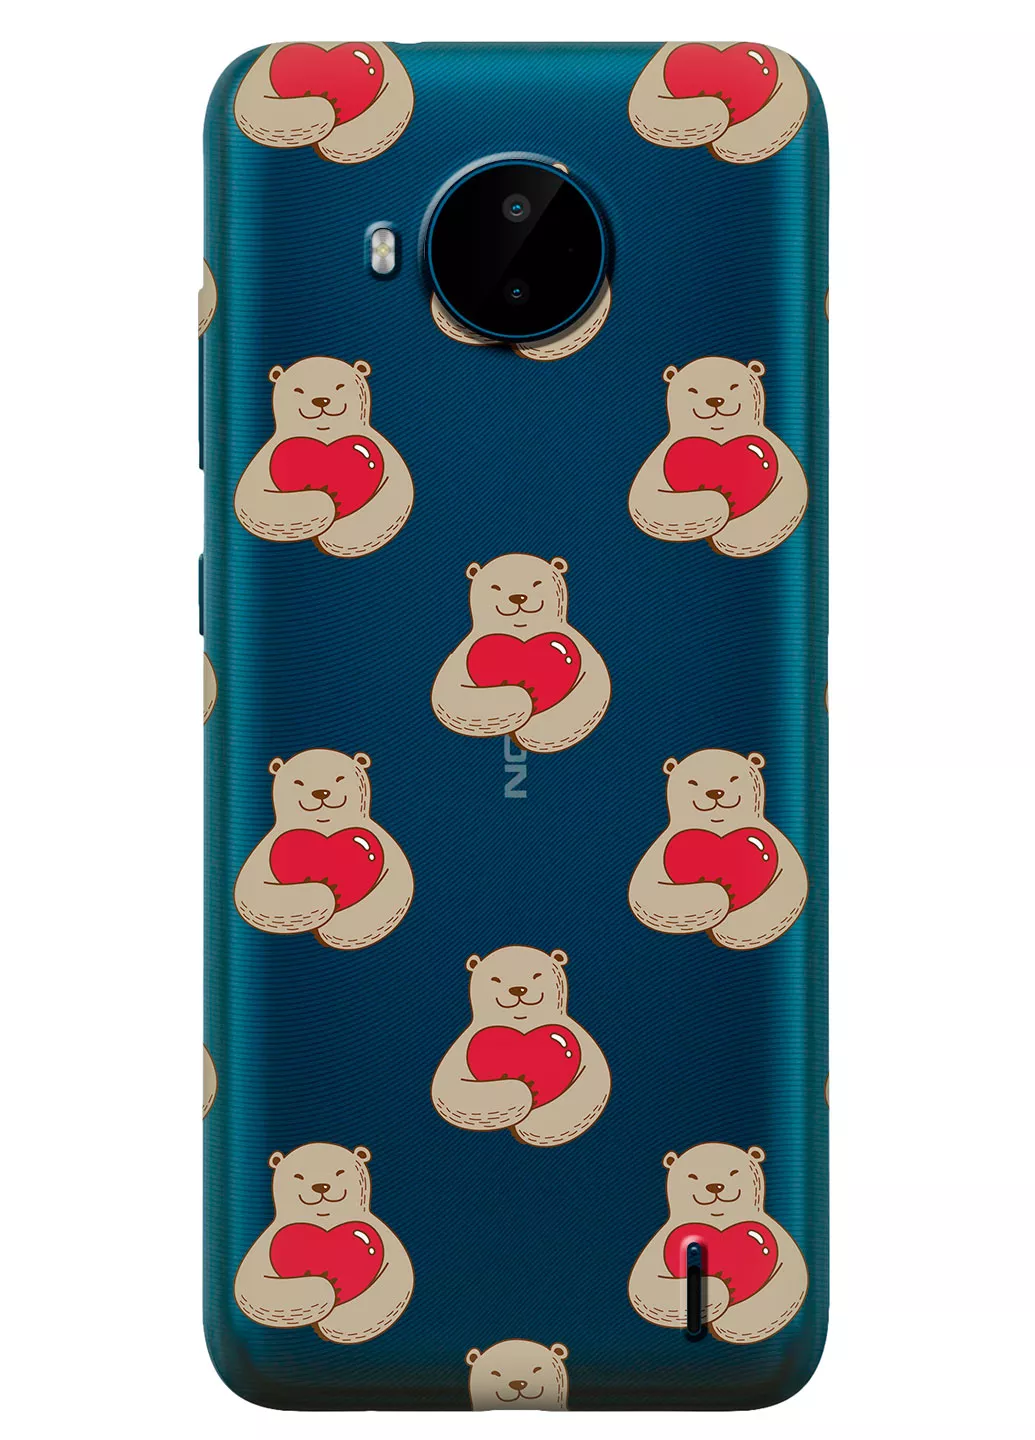 Nokia C20 Plus прозрачный силиконовый чехол с принтом - Влюбленные медведи